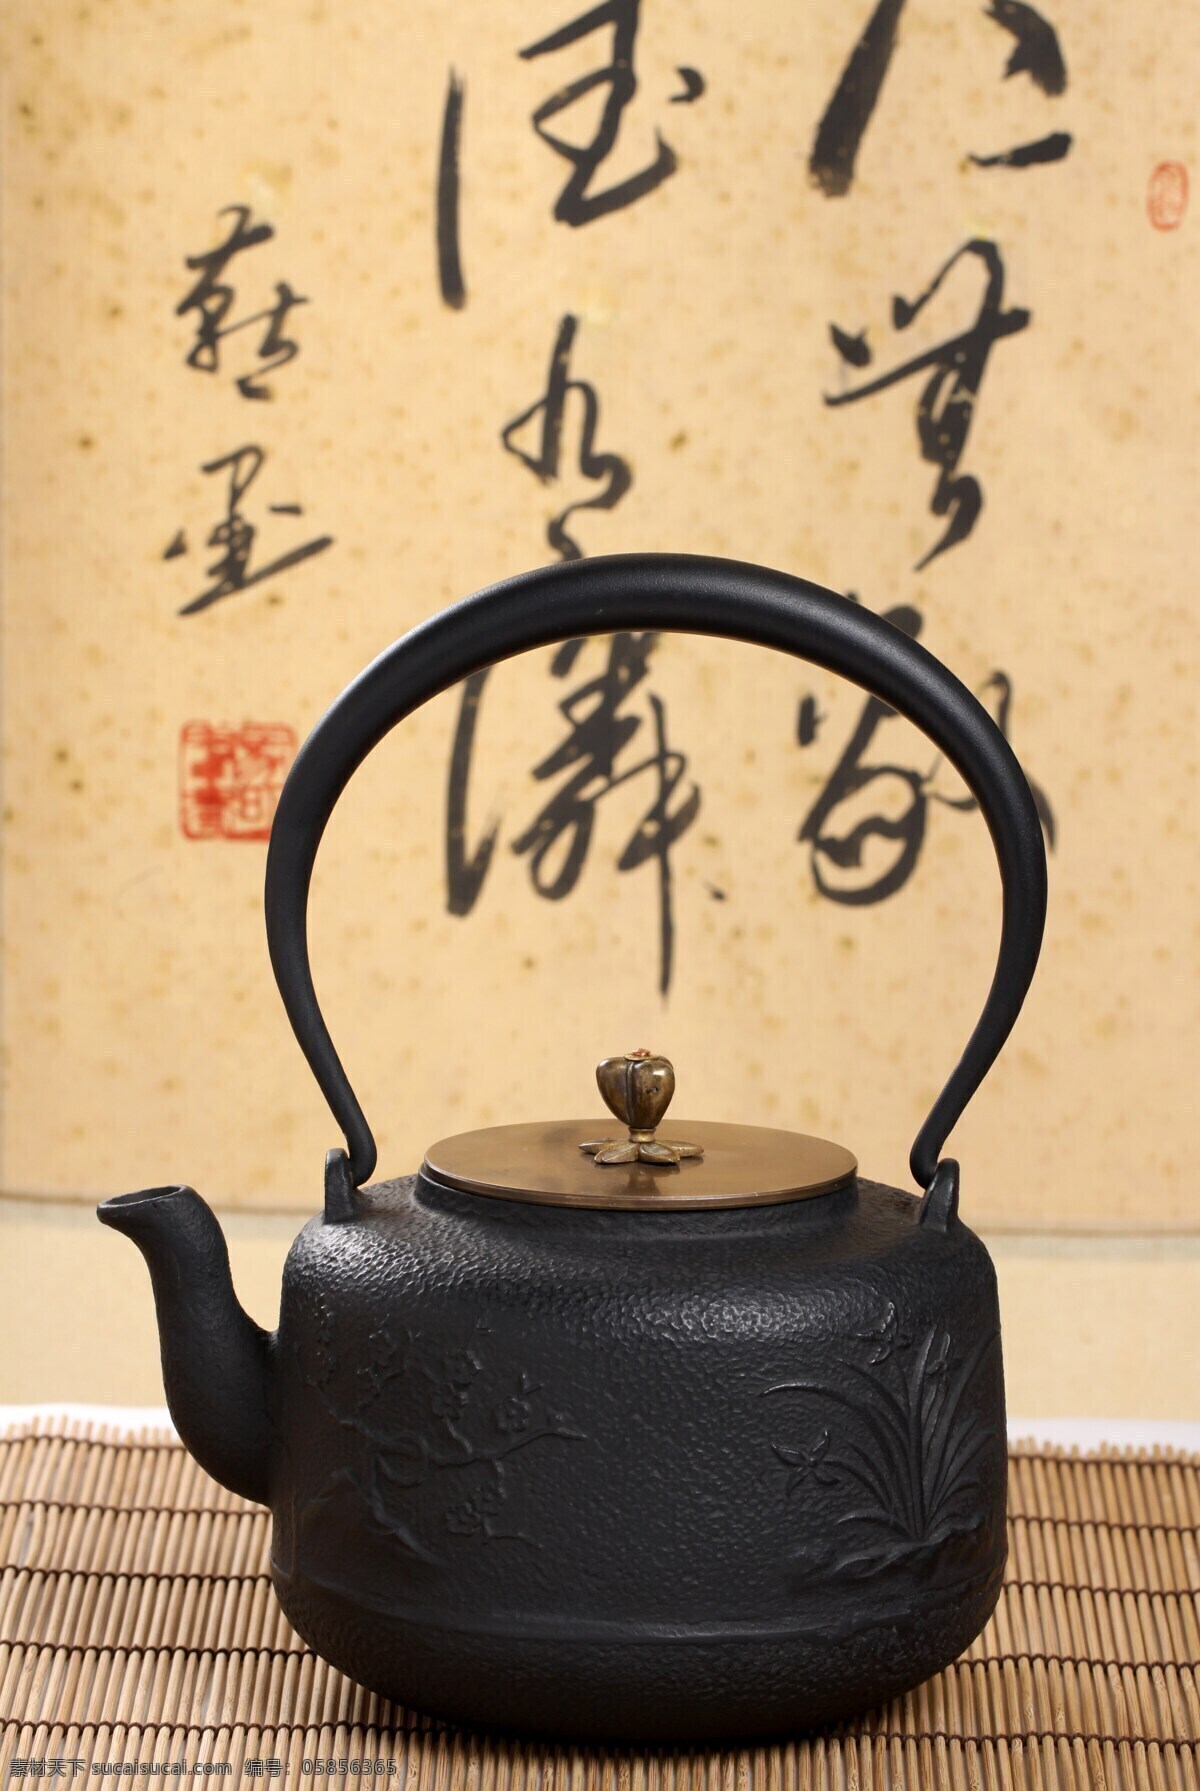 铁茶壶 茶壶 喝茶 品茗 茶文化 铁壶 泡茶 黄色